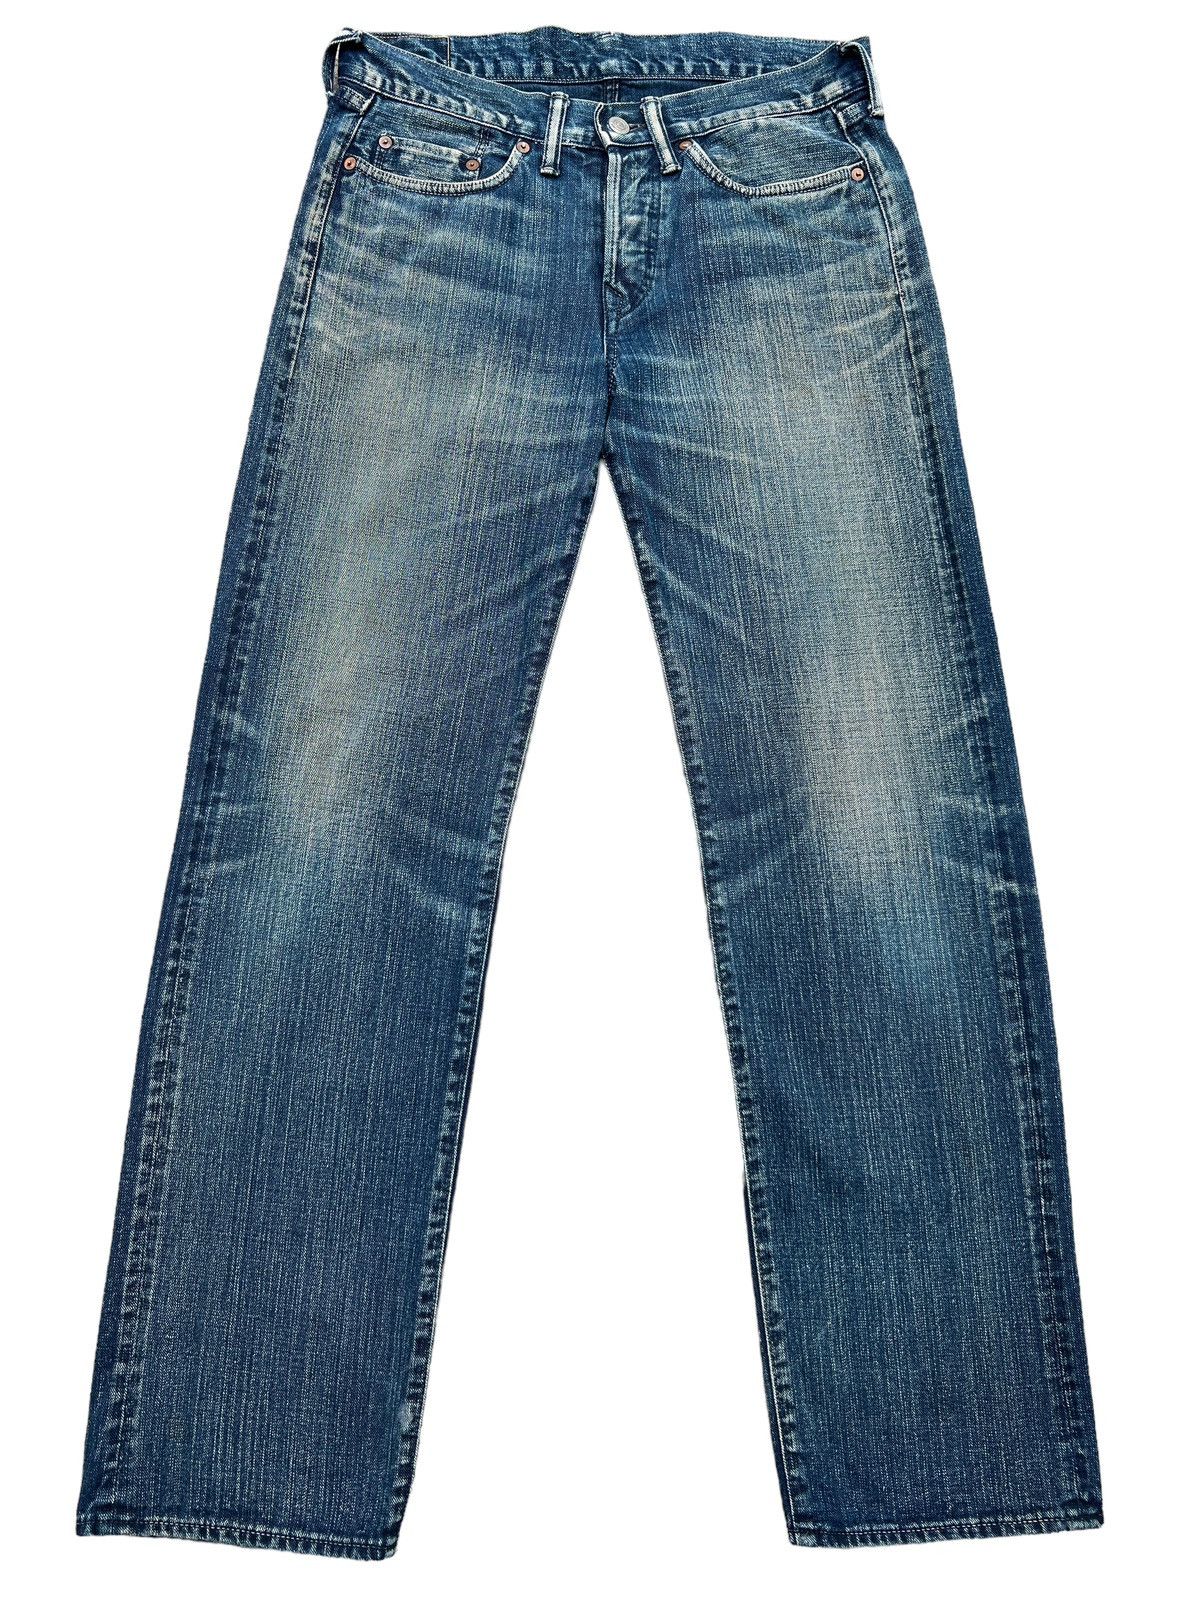 Vintage 45RPM Japan Faded Mudwash Denim Jeans 33x33 - 1